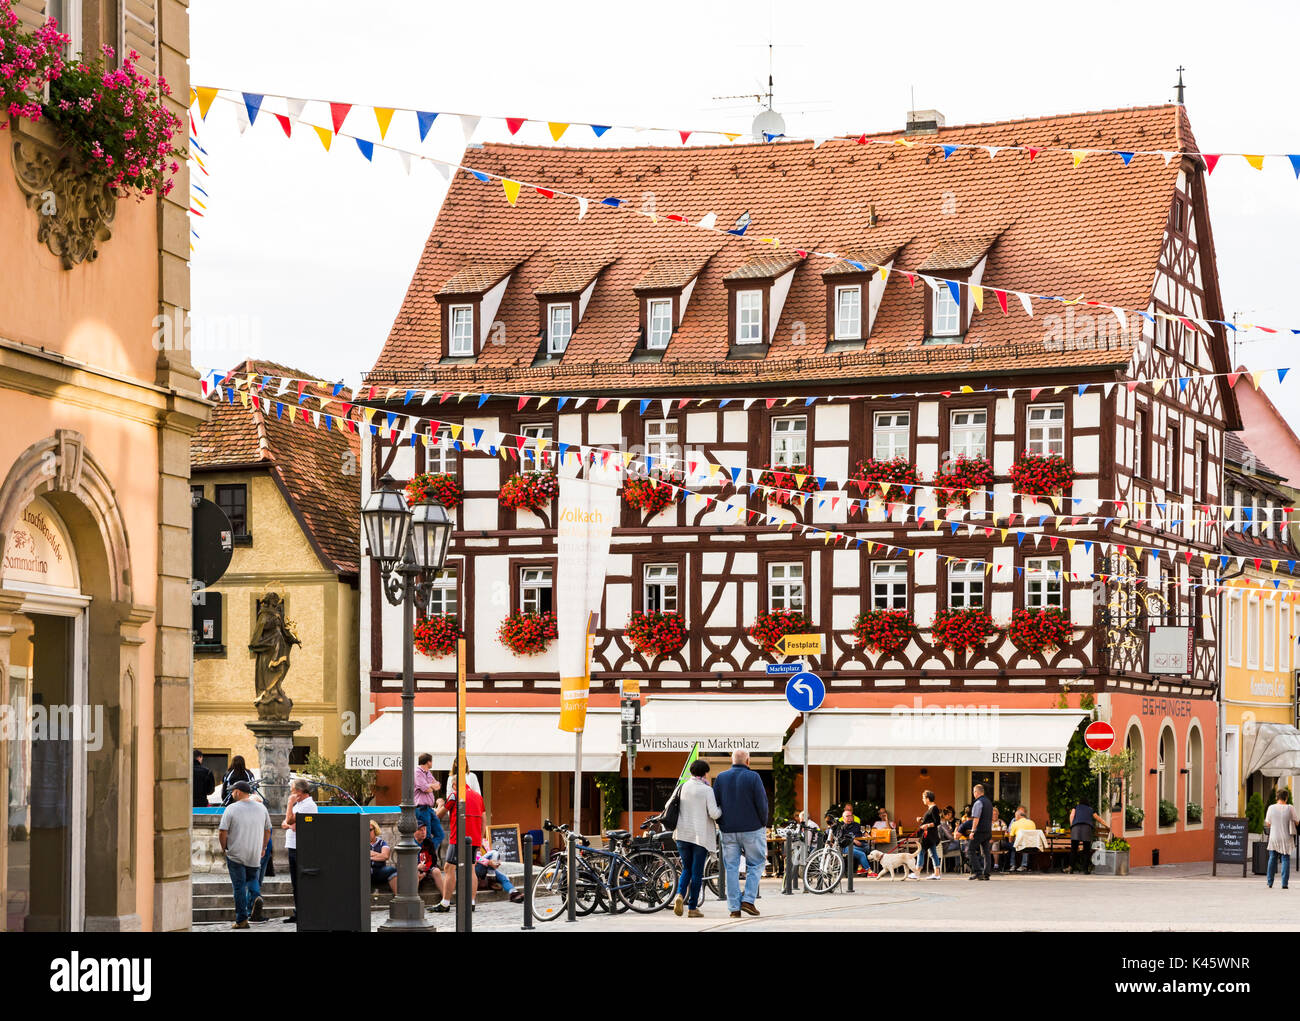 VOLKACH, Germania - 20 agosto: turisti presso la storica città vecchia di Volkach, Germania il 20 agosto 2017. Volkach è famosa per il suo annuale festival del vino Foto Stock